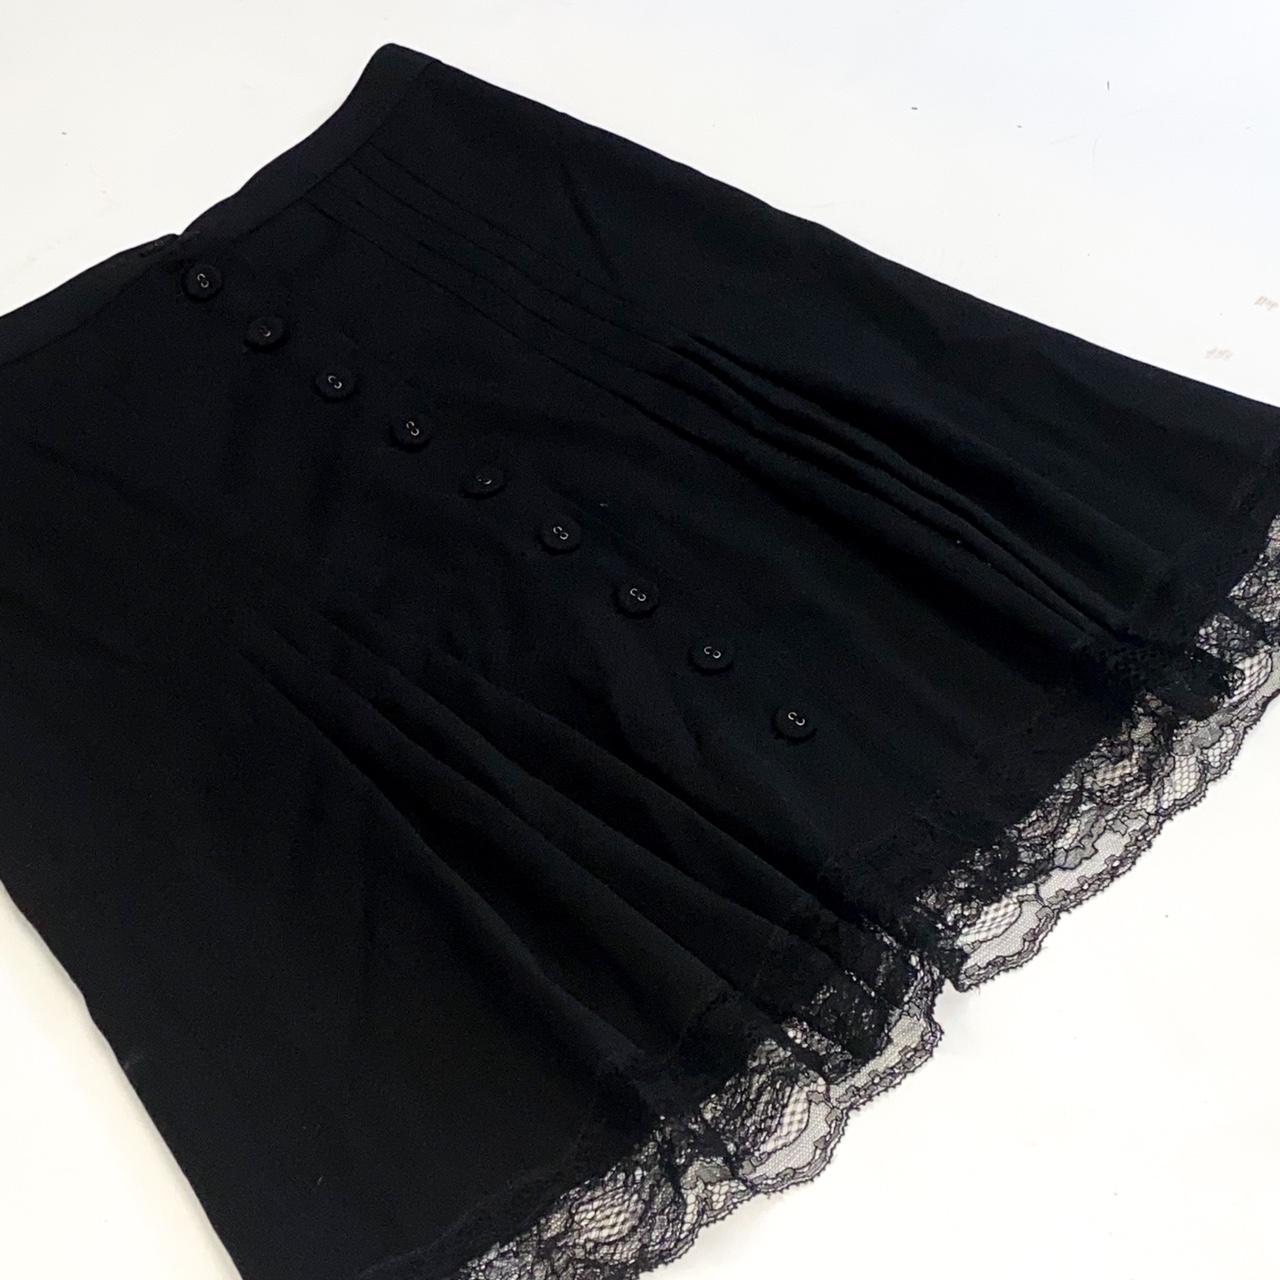 Moschino Cheap & Chic Women's Black Skirt